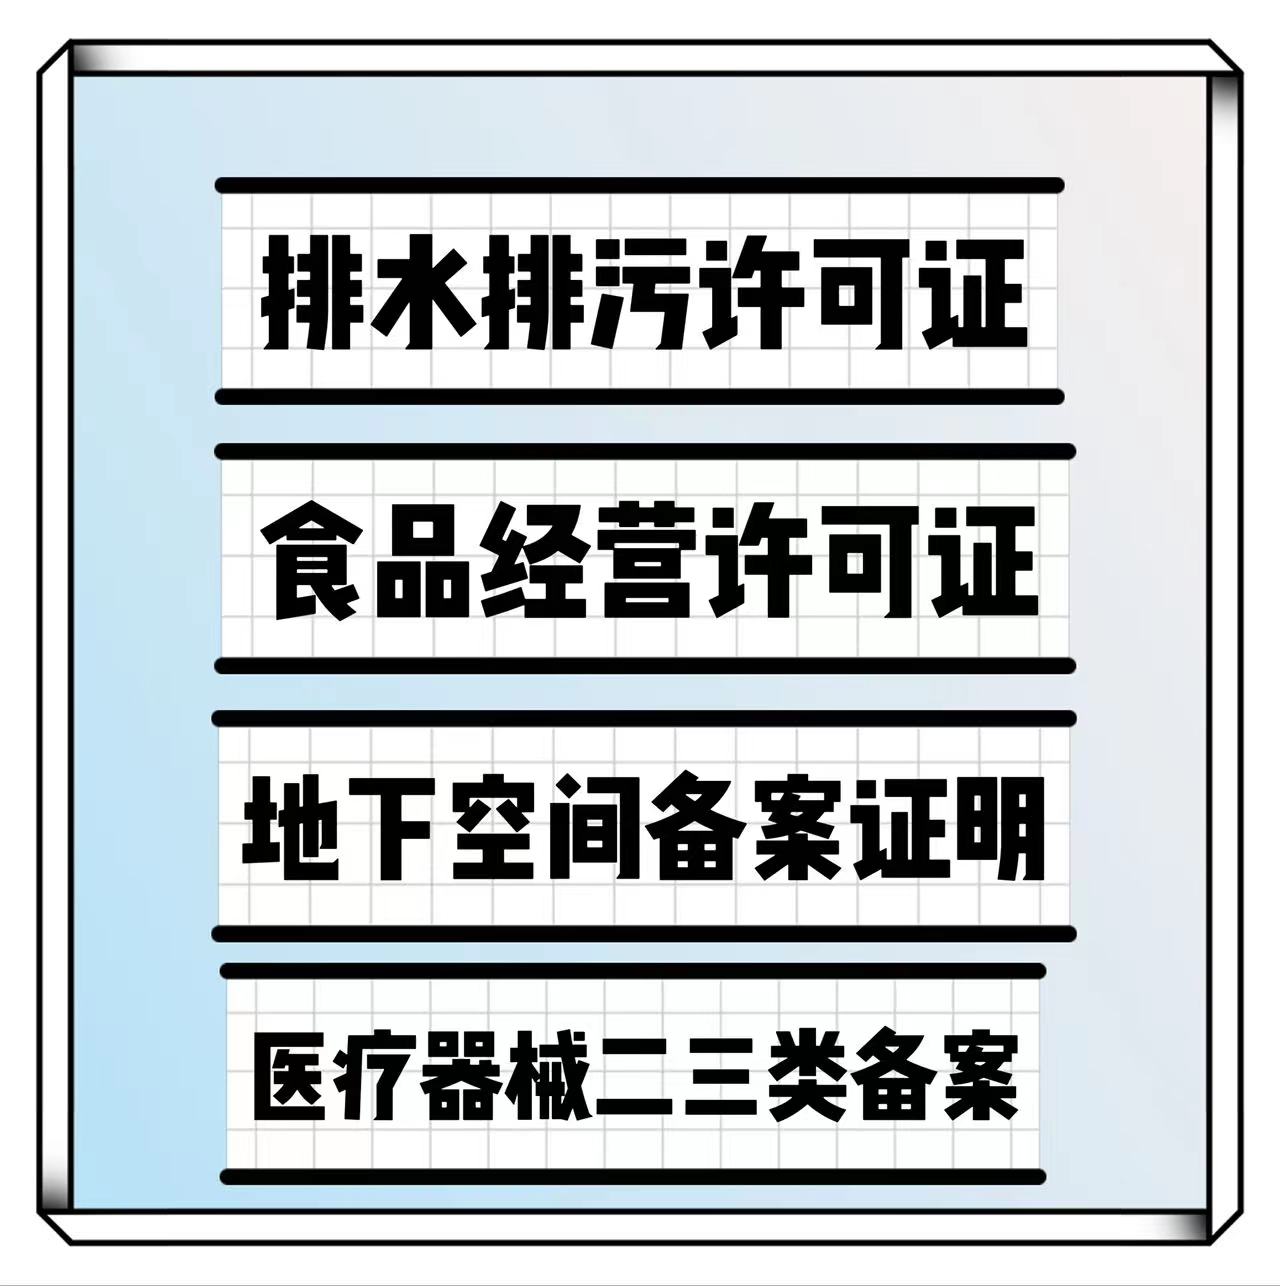 条件*代办酒店学校排水许可证审批北京昌平区